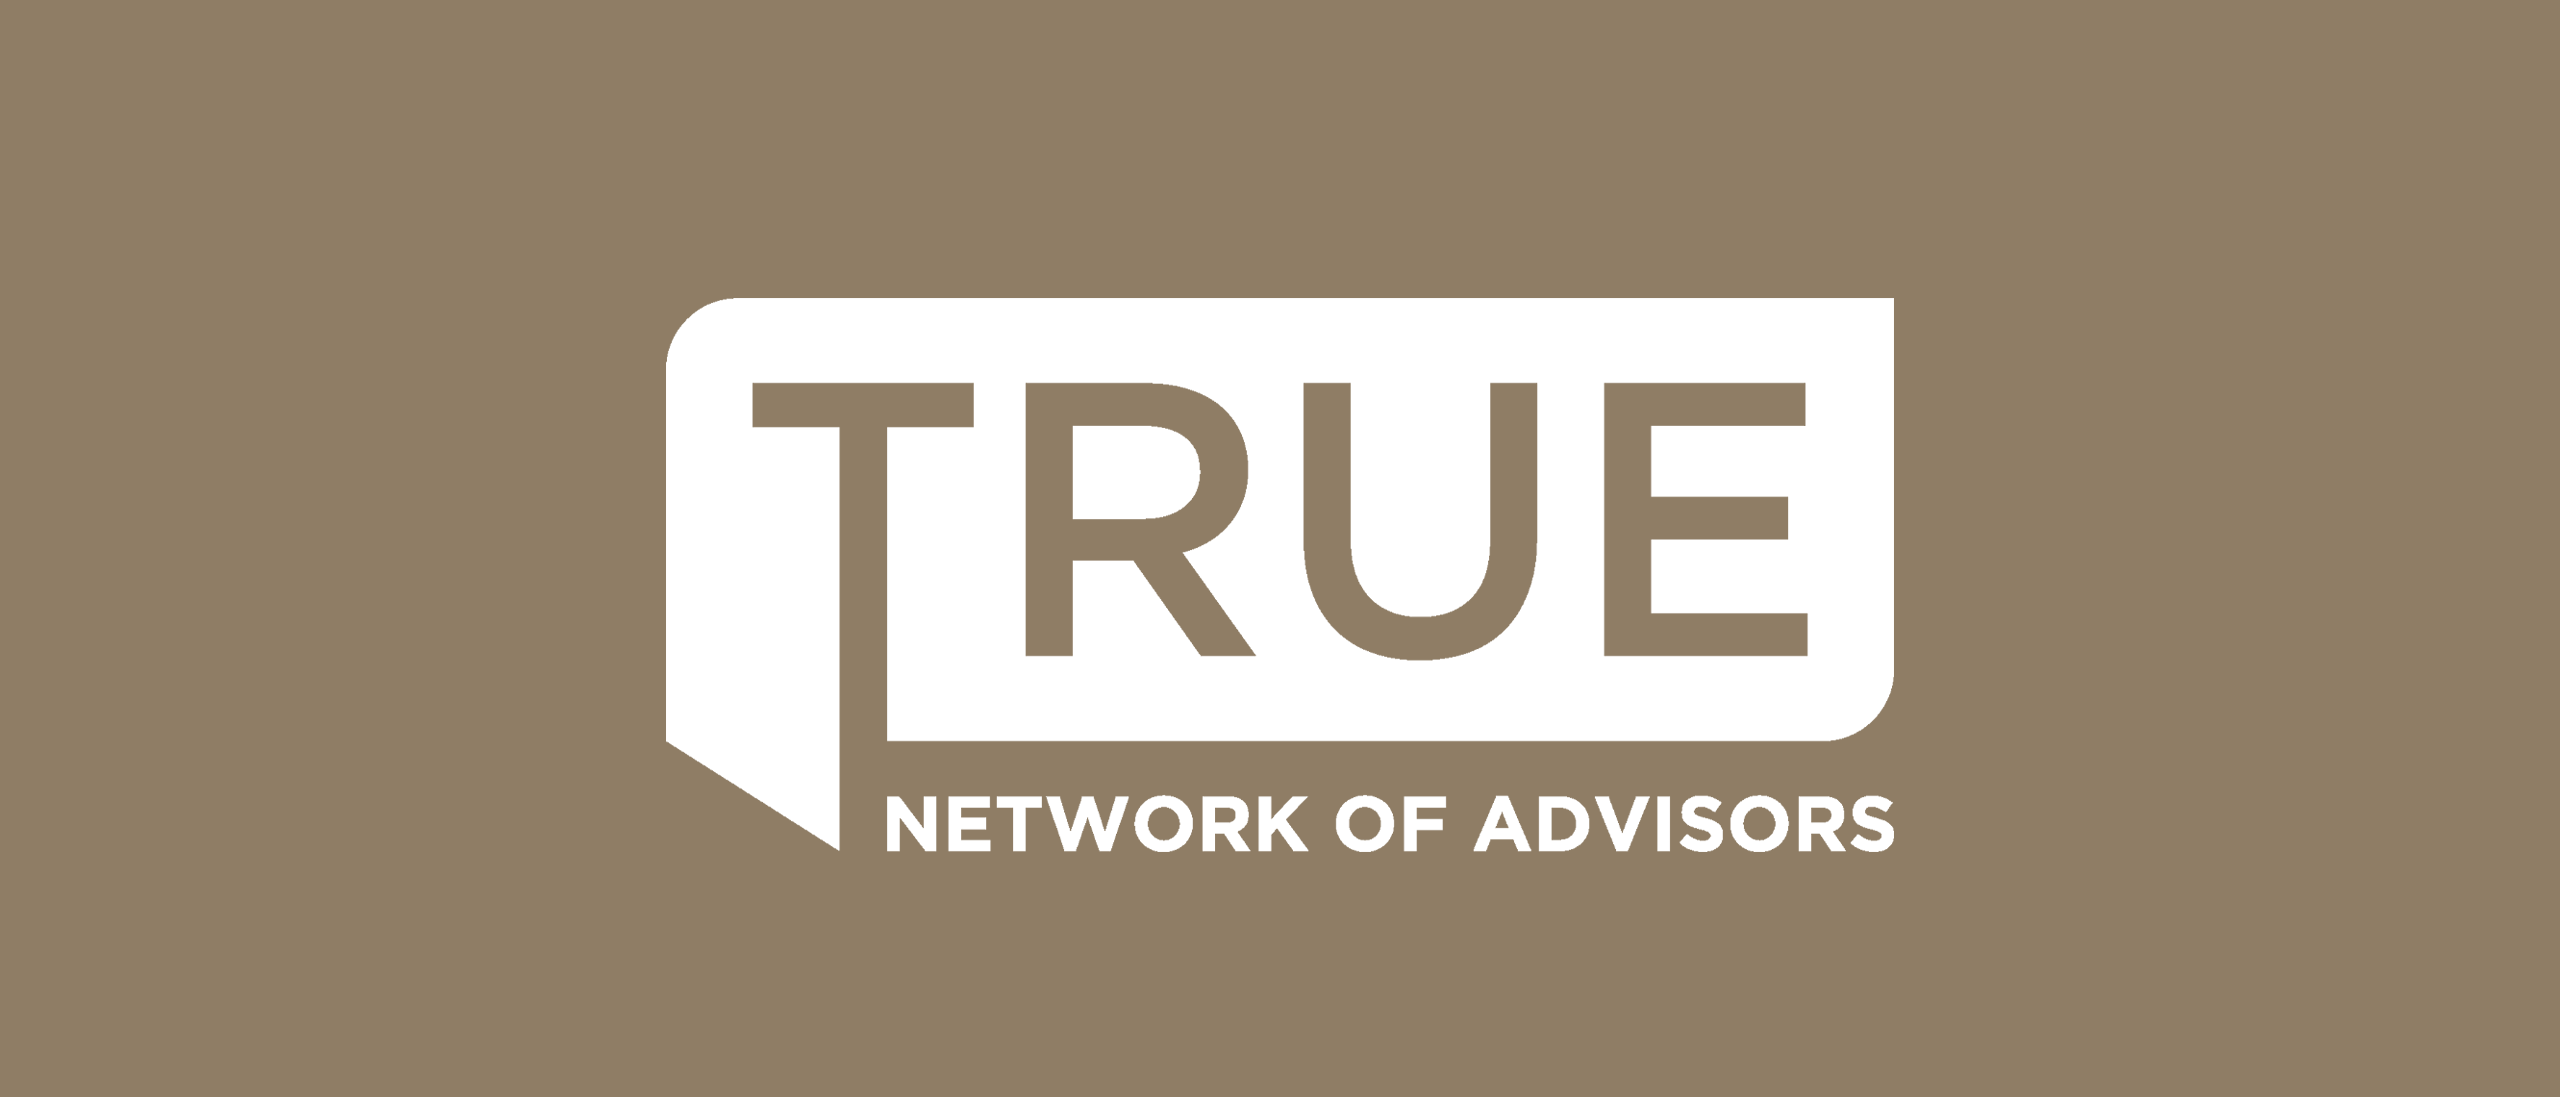 True Network of Advisors Logo